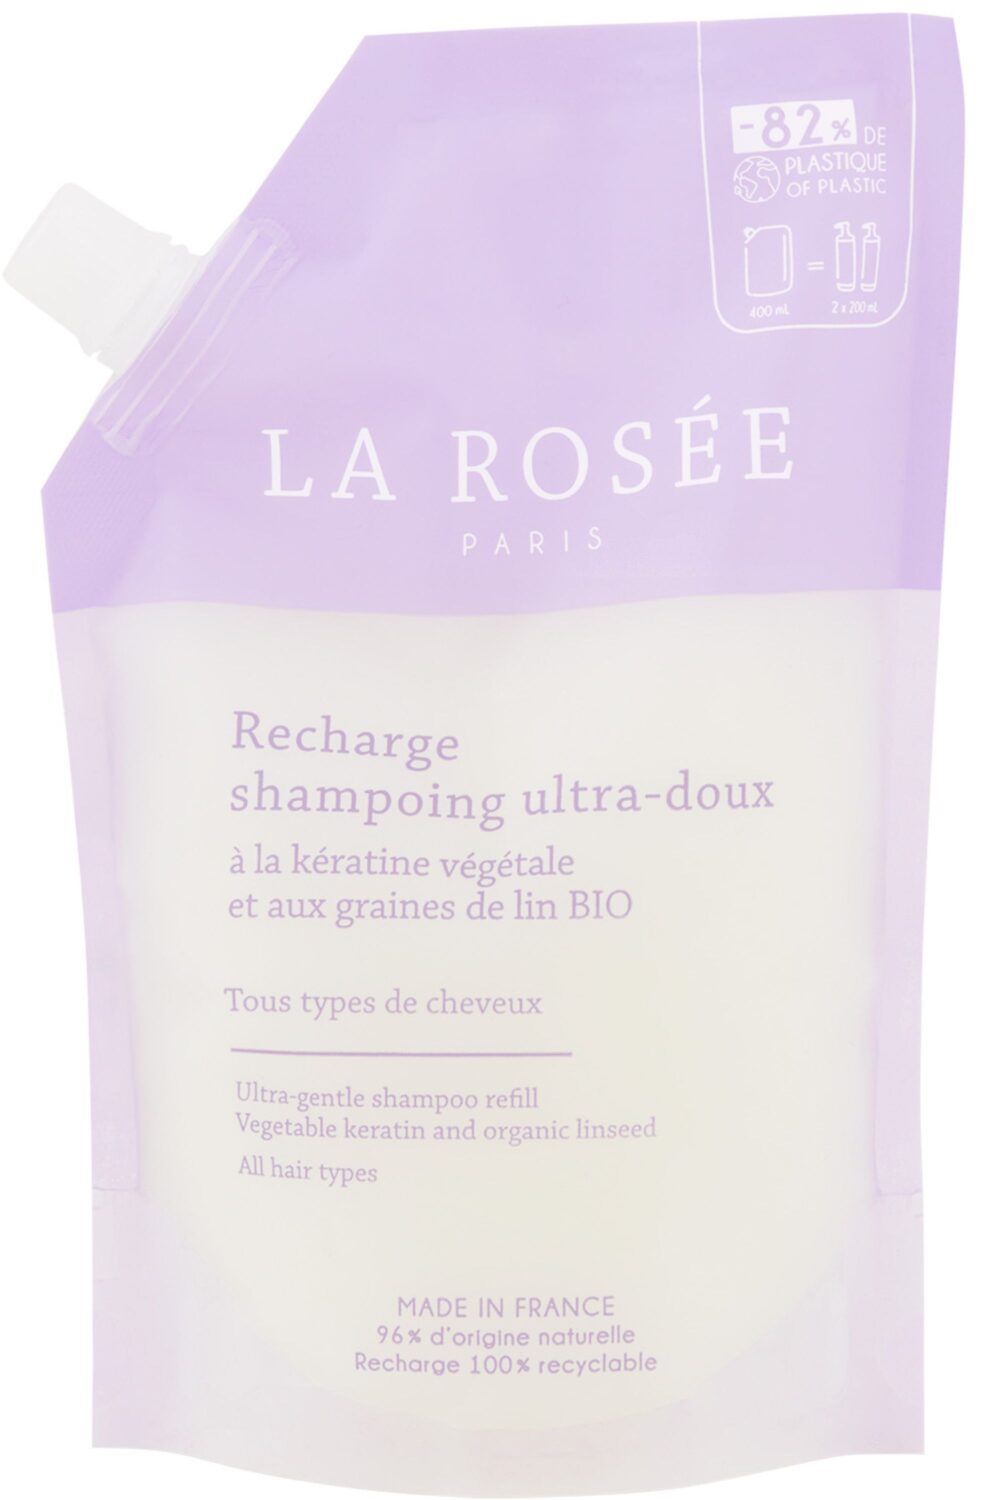 La Rosée - Shampoing ultra doux rechargeable et son flacon